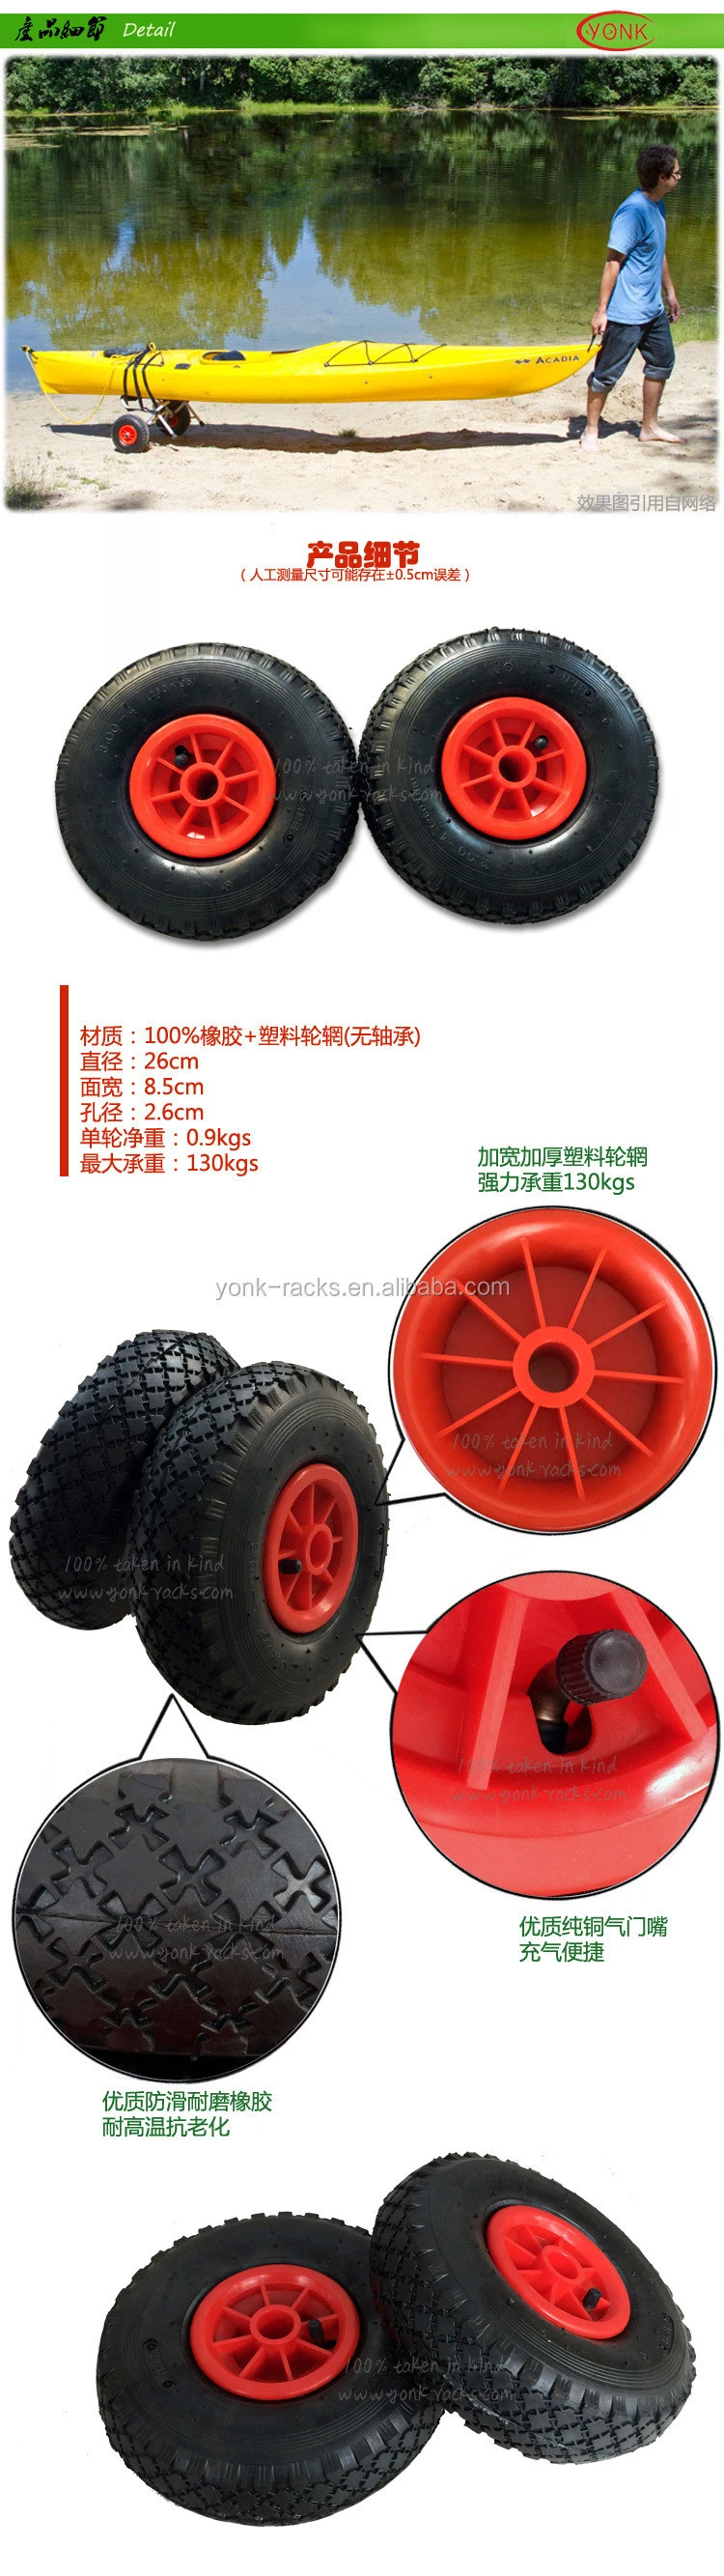 10 inch flat free polyurethane tires trolley cart wheel